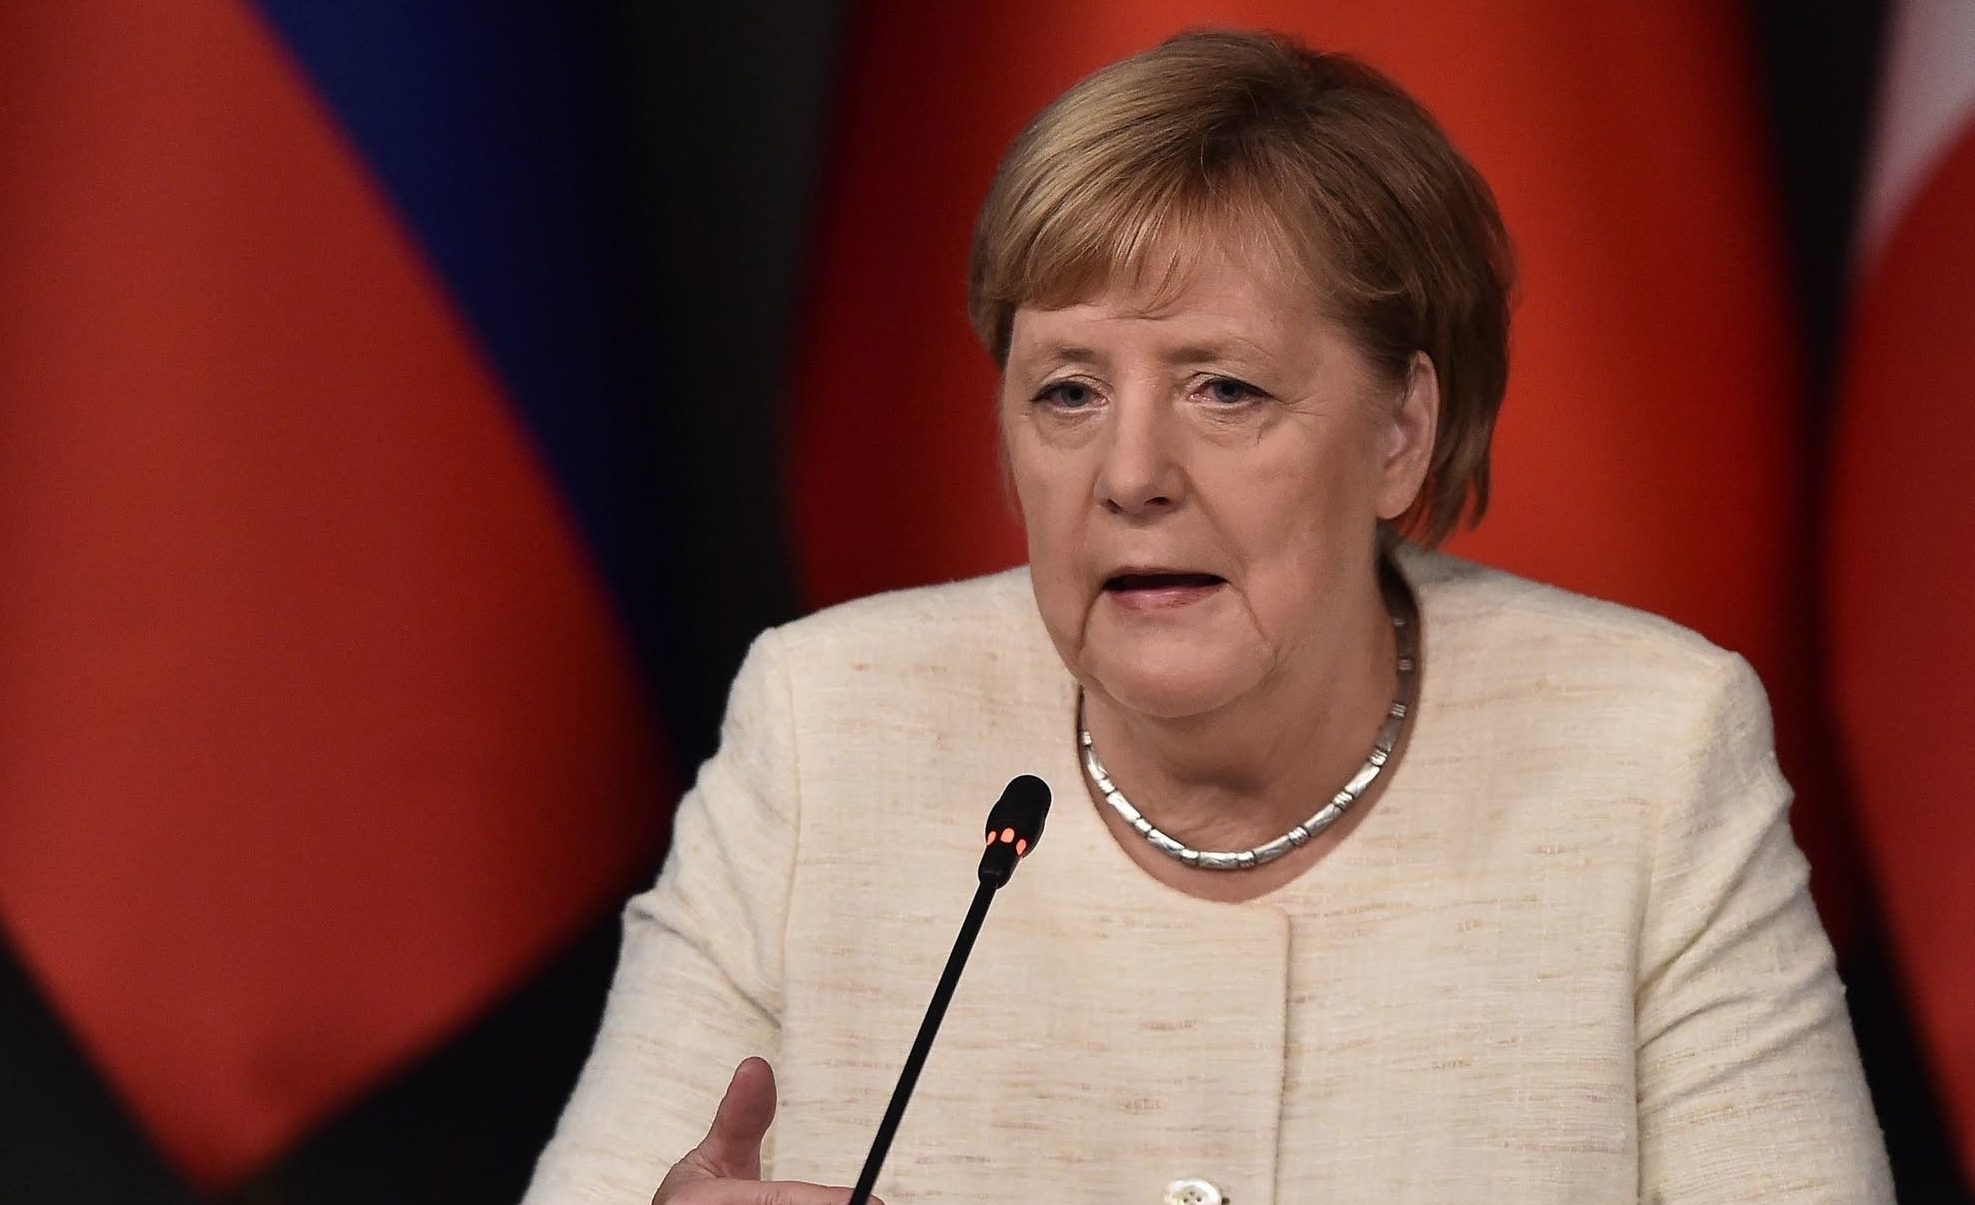 Merkel kërkon forcim të marrëdhënieve BE-Liga Arabe